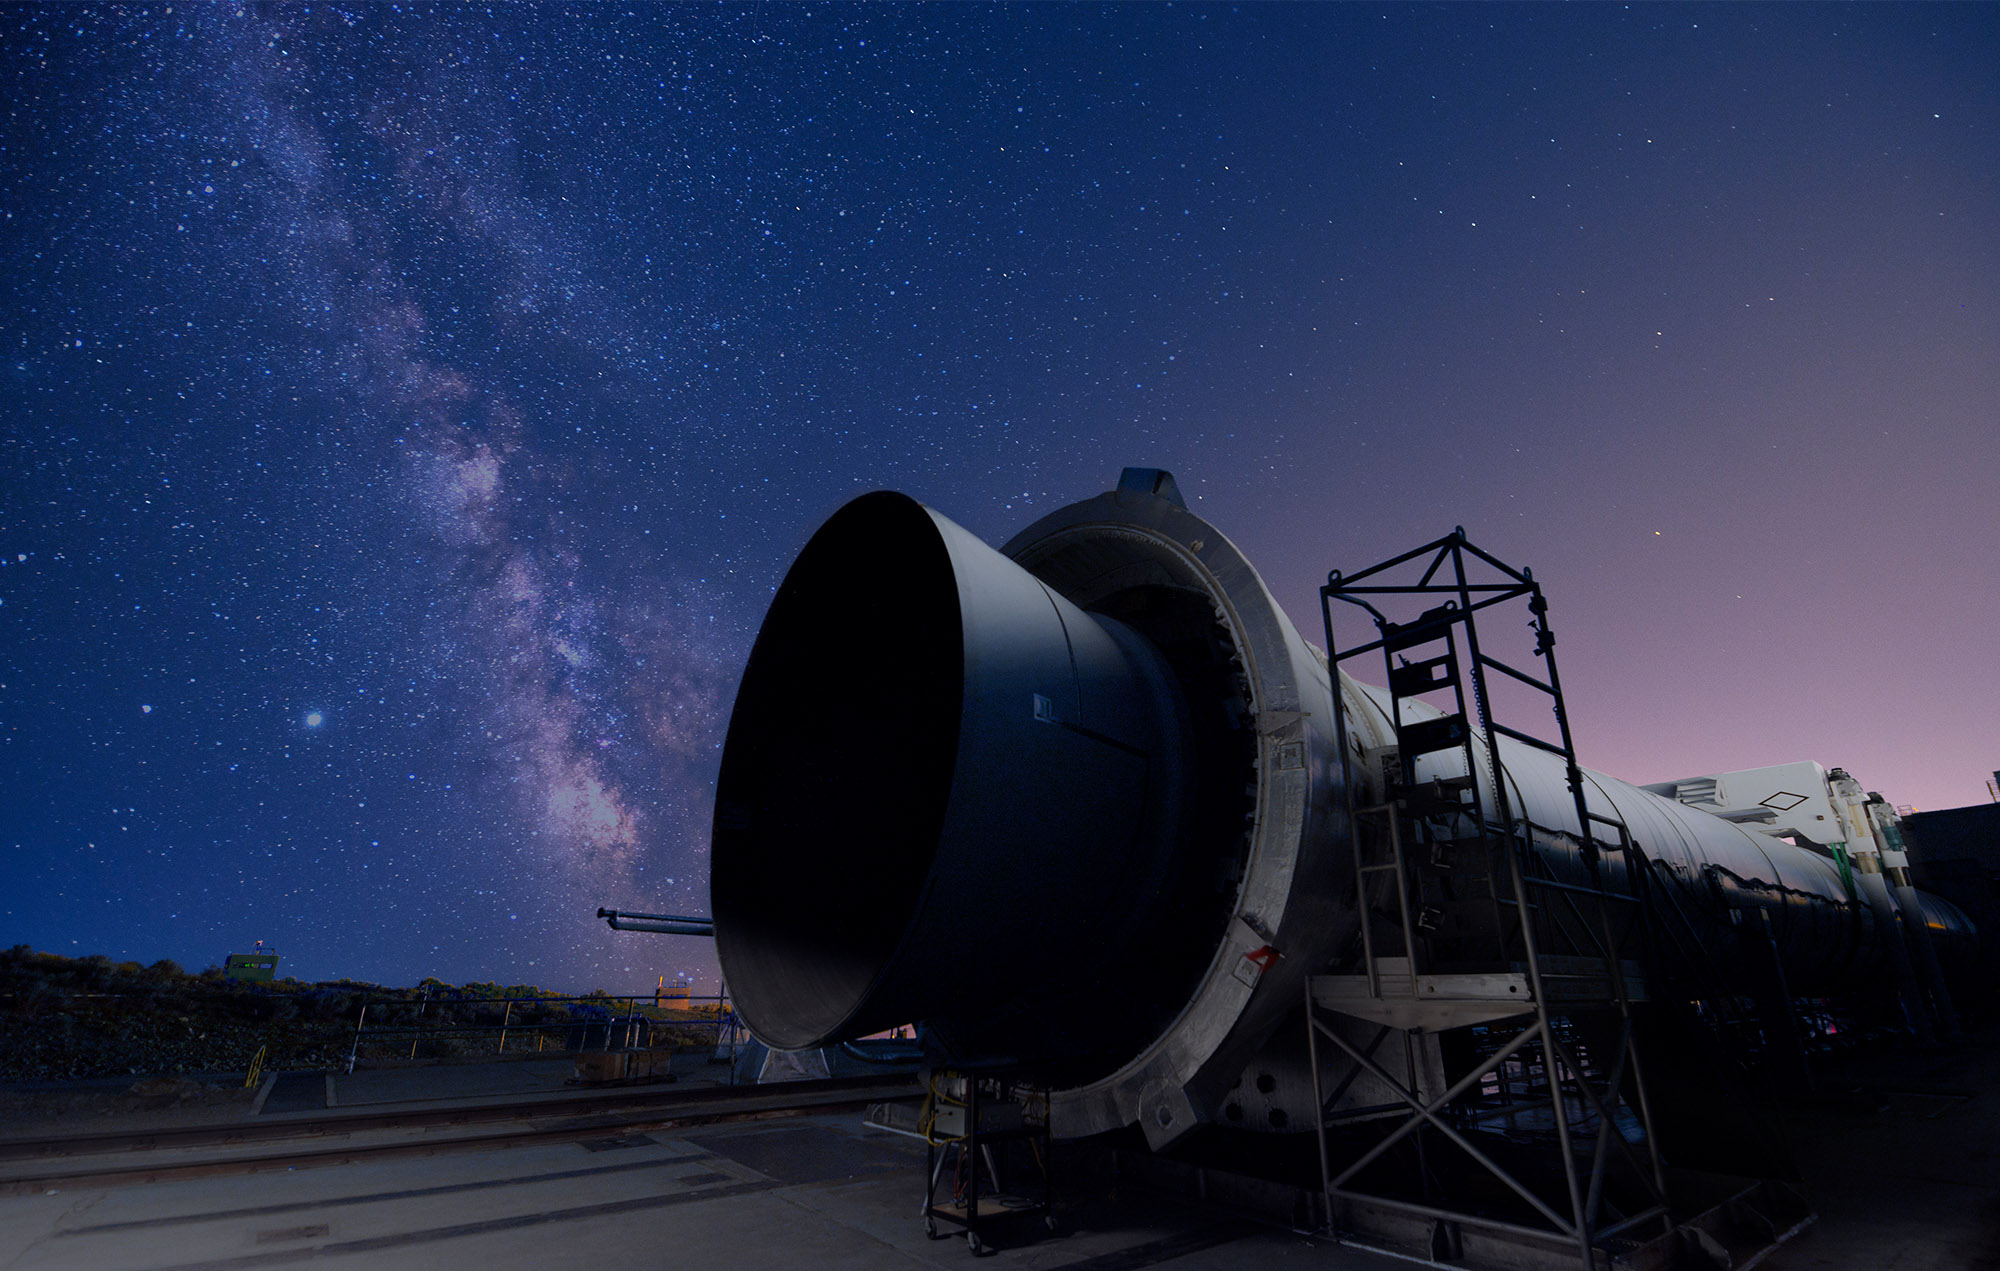 Twilit sky of a five segment rocket motor resting on platform under a star-filled sky